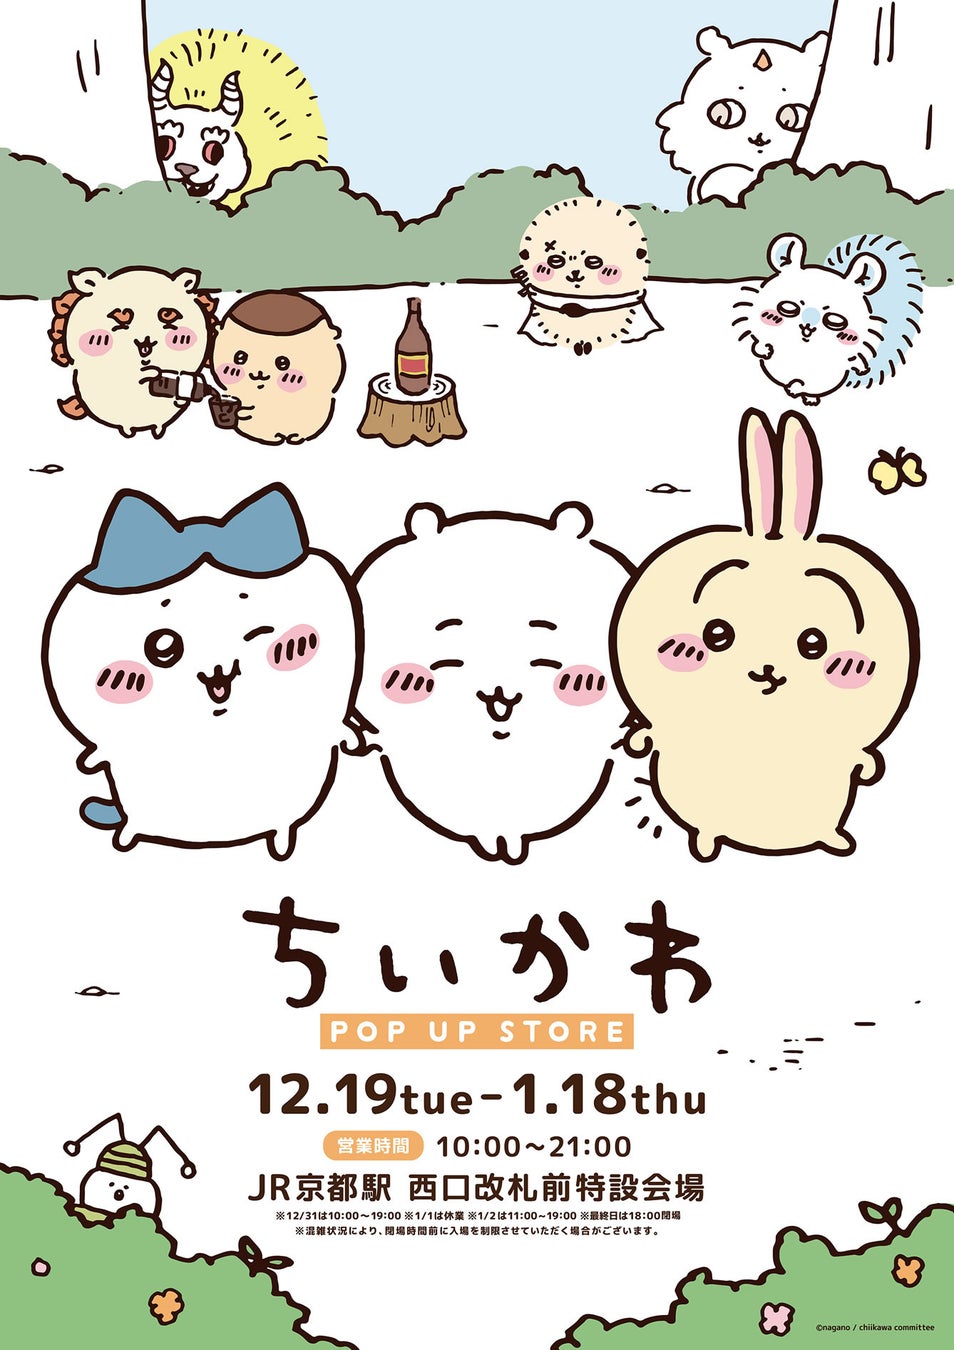 「ちいかわ POP UP STORE」がJR京都駅 西口改札前特設会場 に期間限定OPEN！